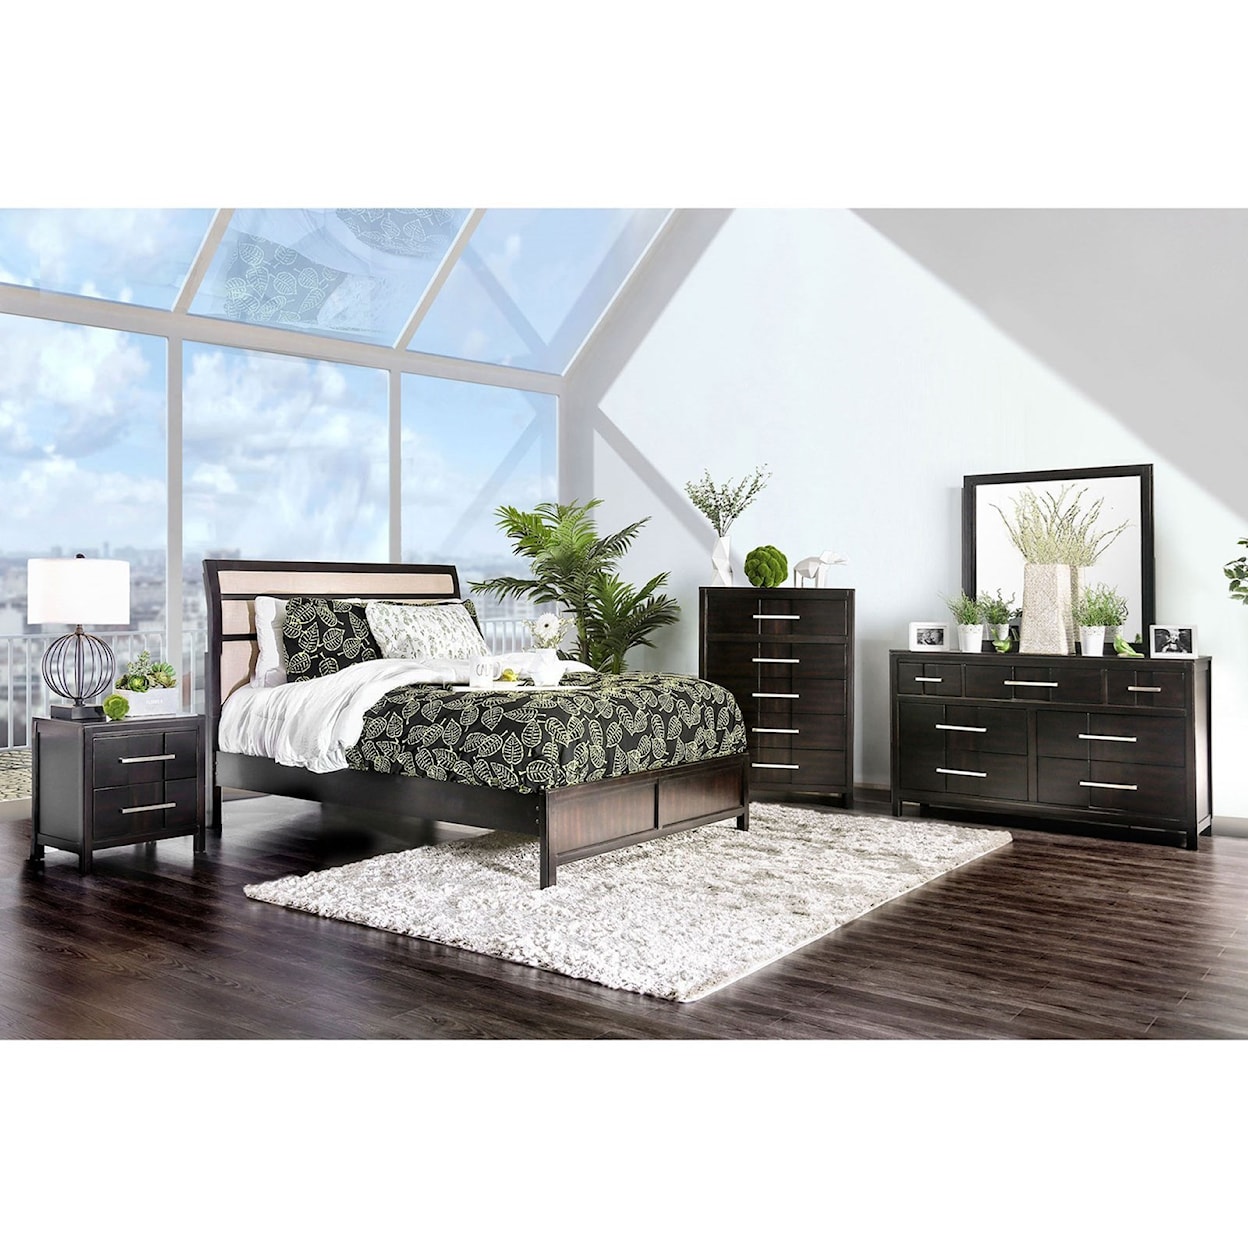 Furniture of America Berenice Queen Bedroom Group